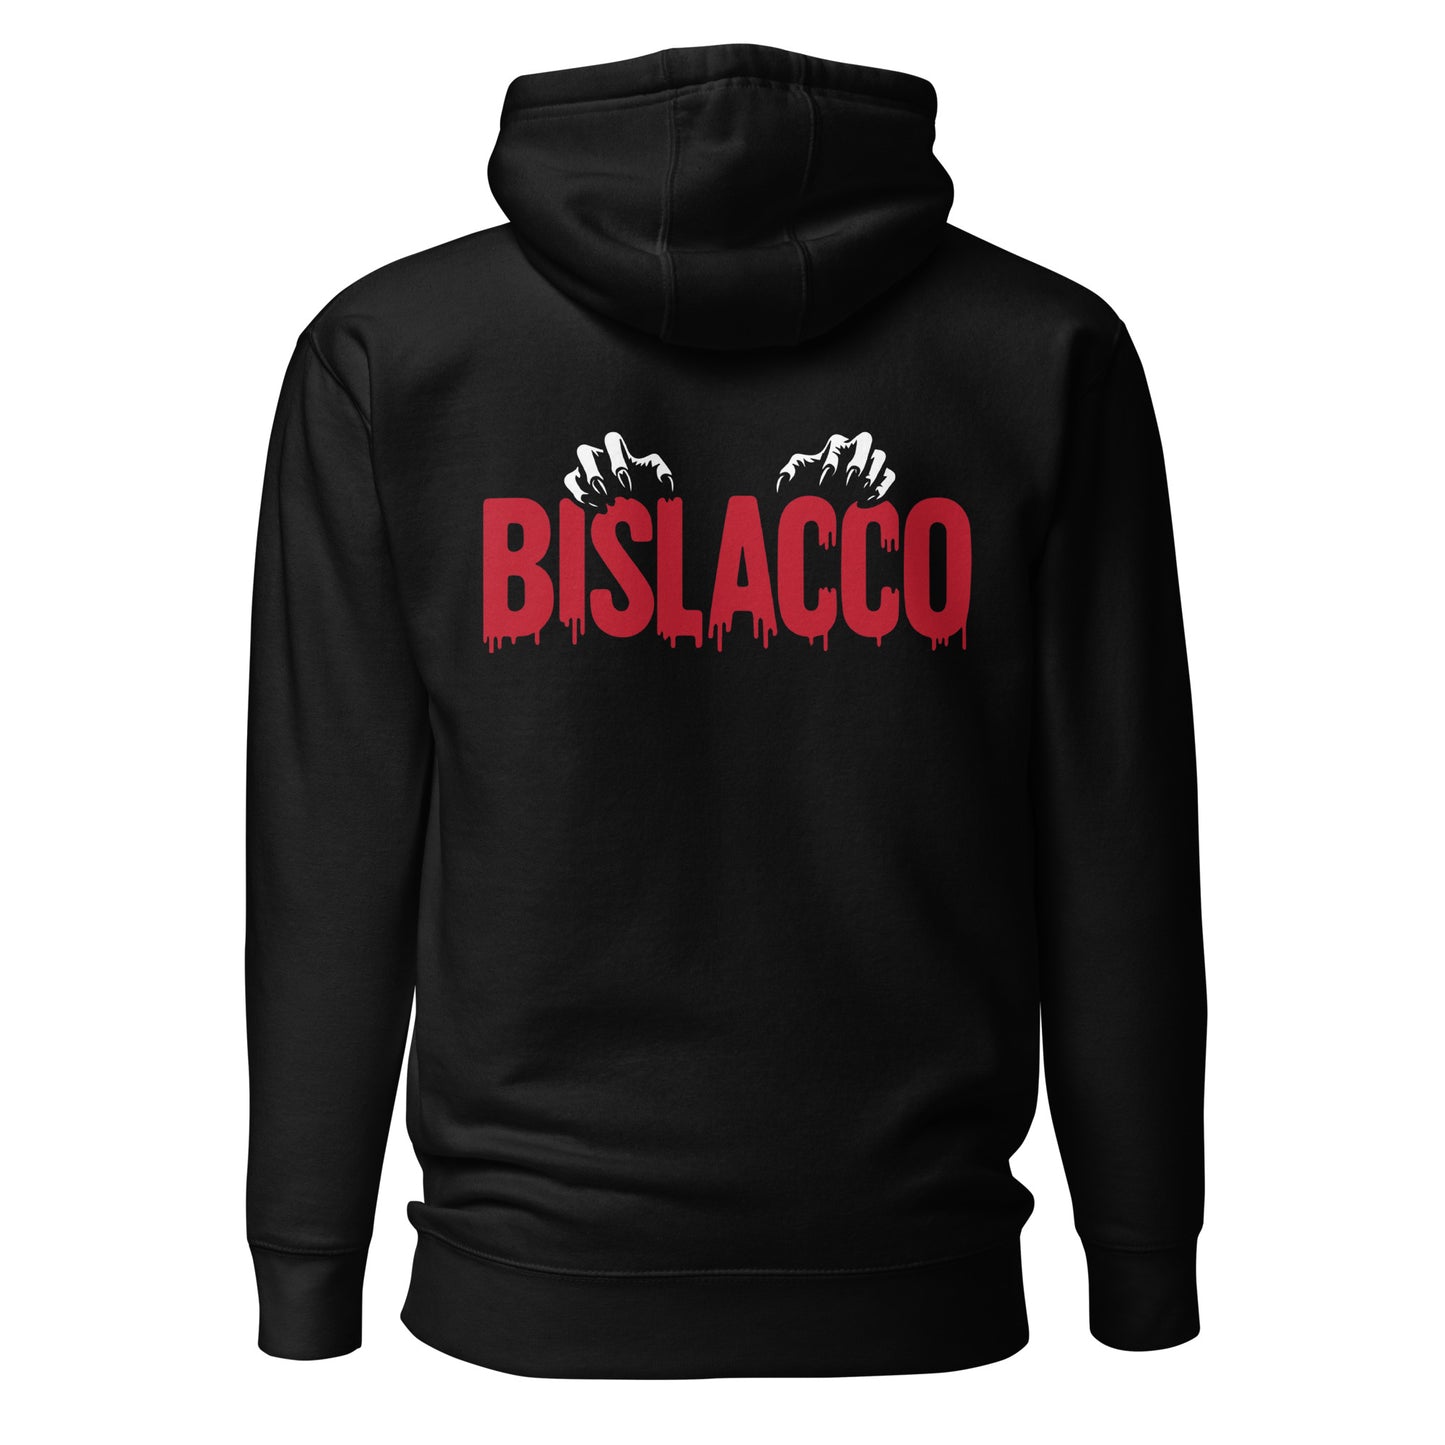 Bislacco hooded sweatshirt